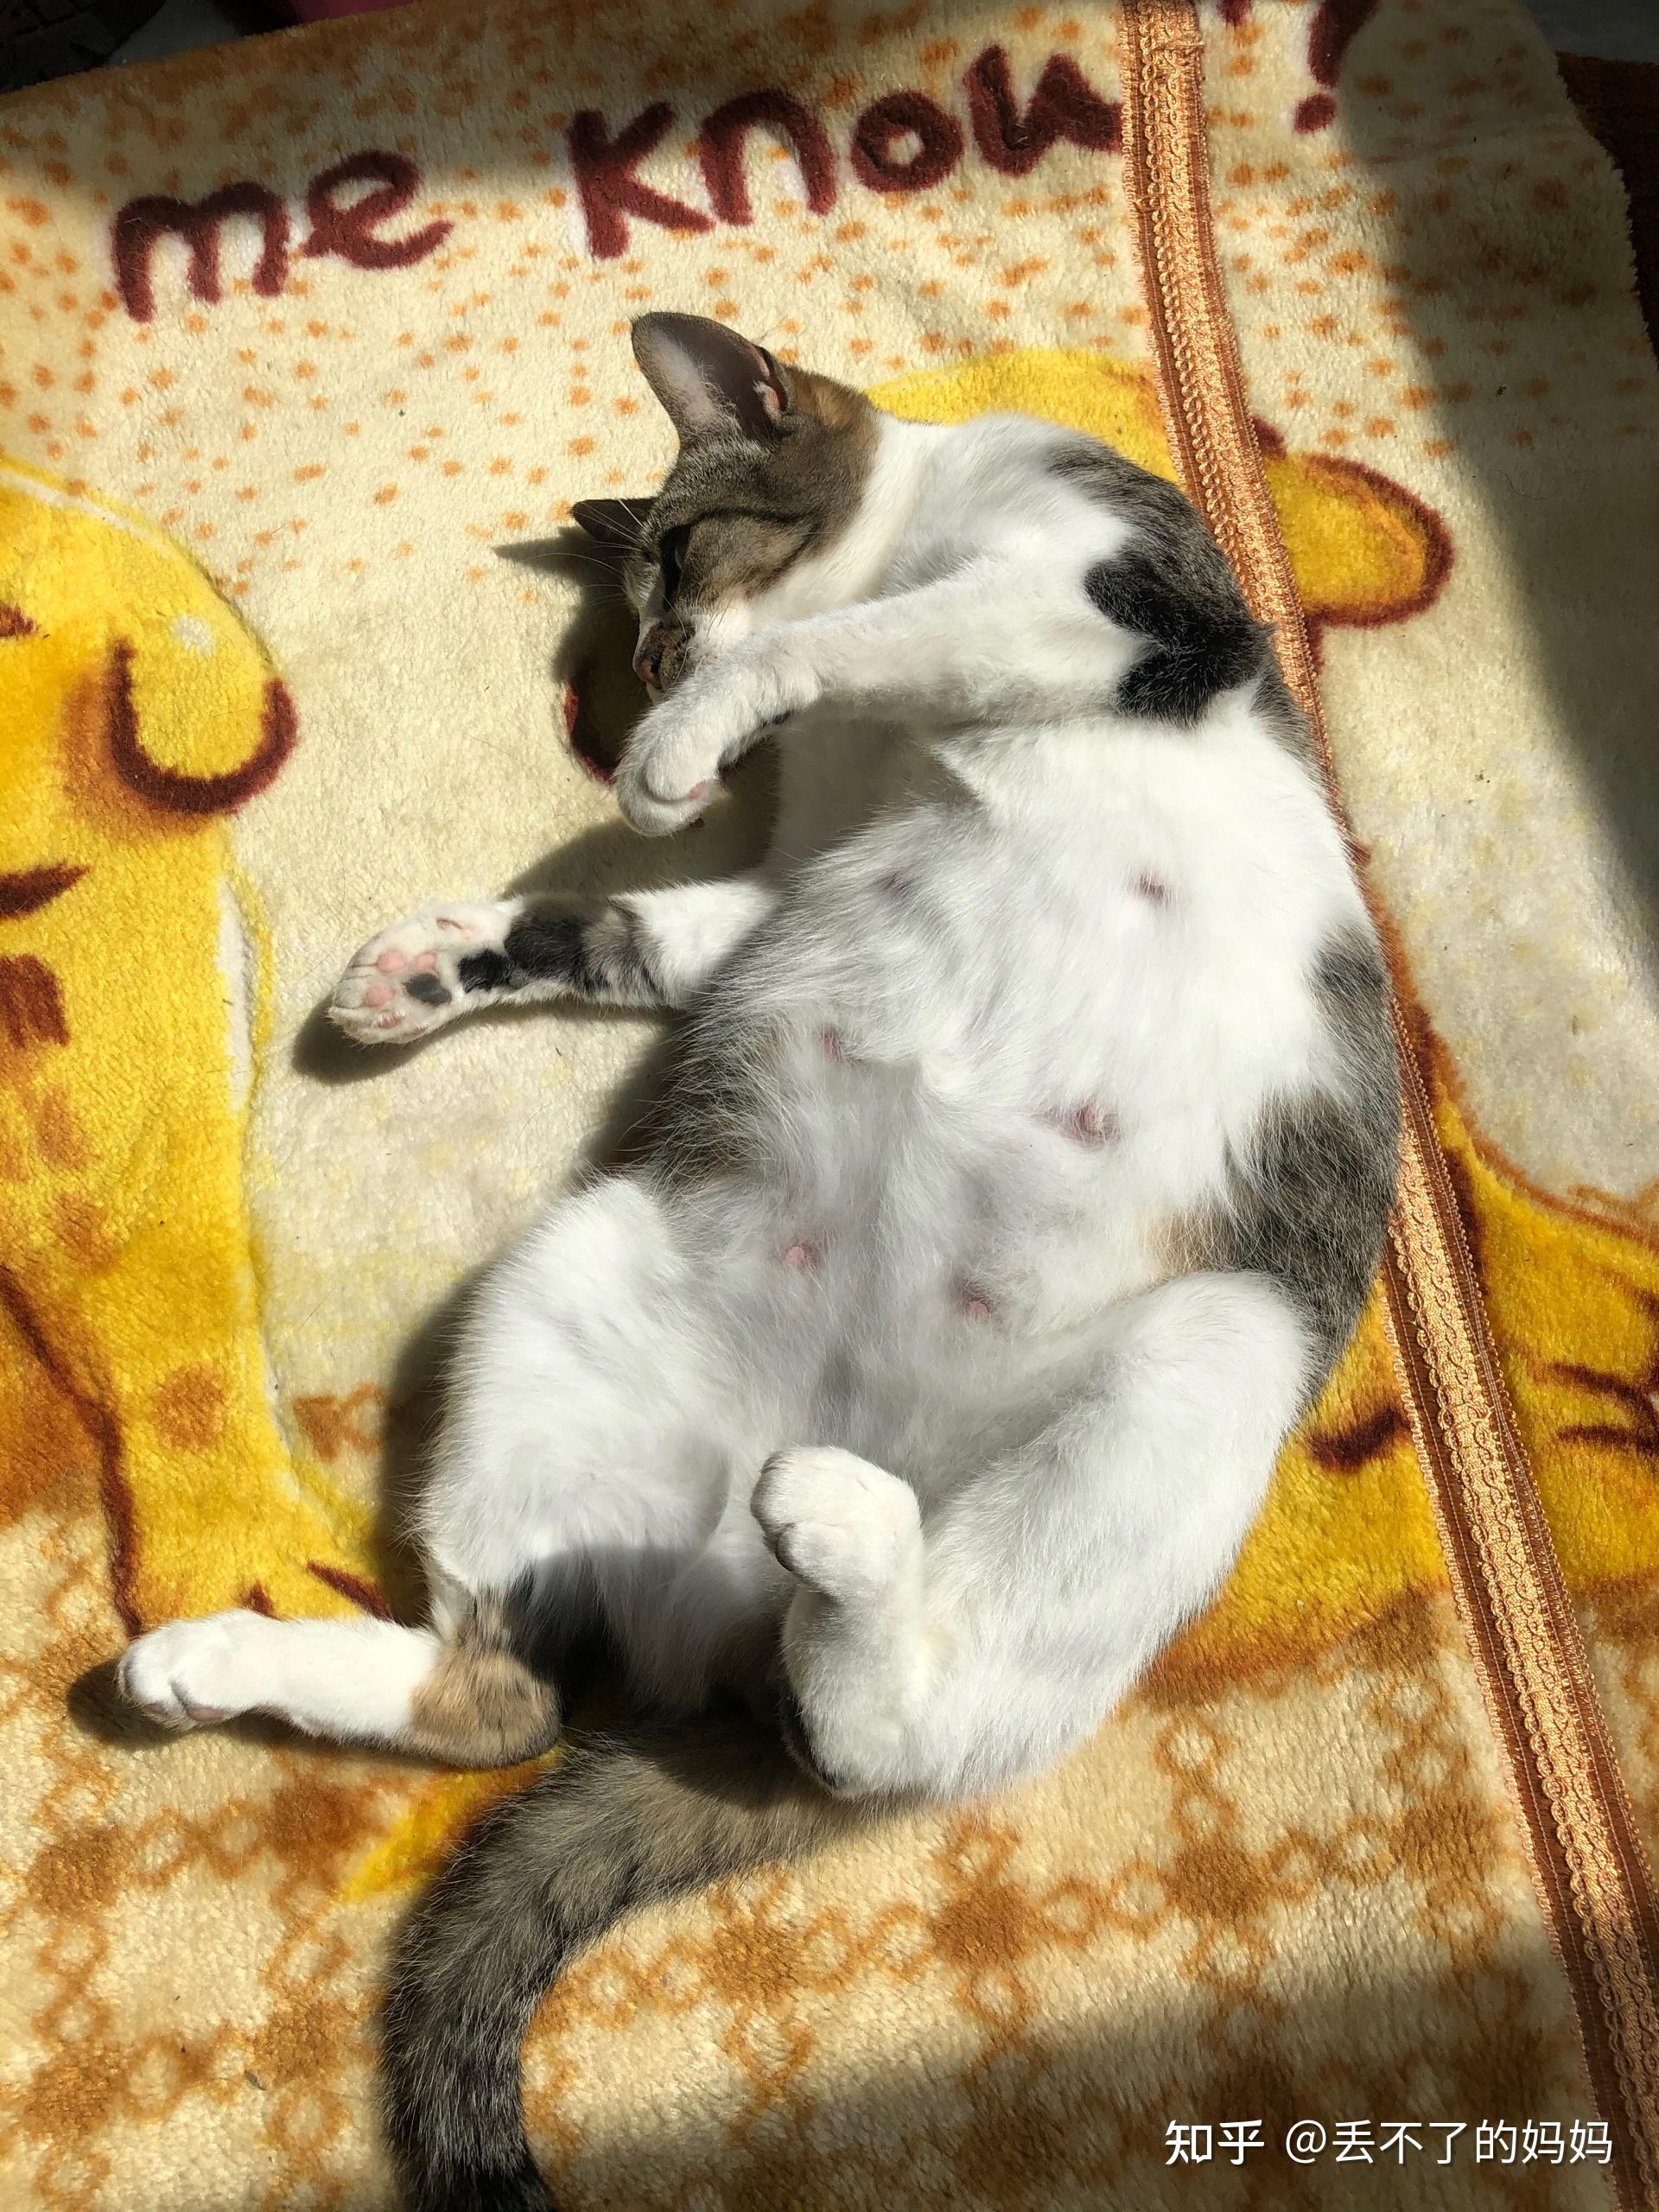 我觉得肚子太大了,有没有遇见过这样大的肚子大概几只小猫咪吗?